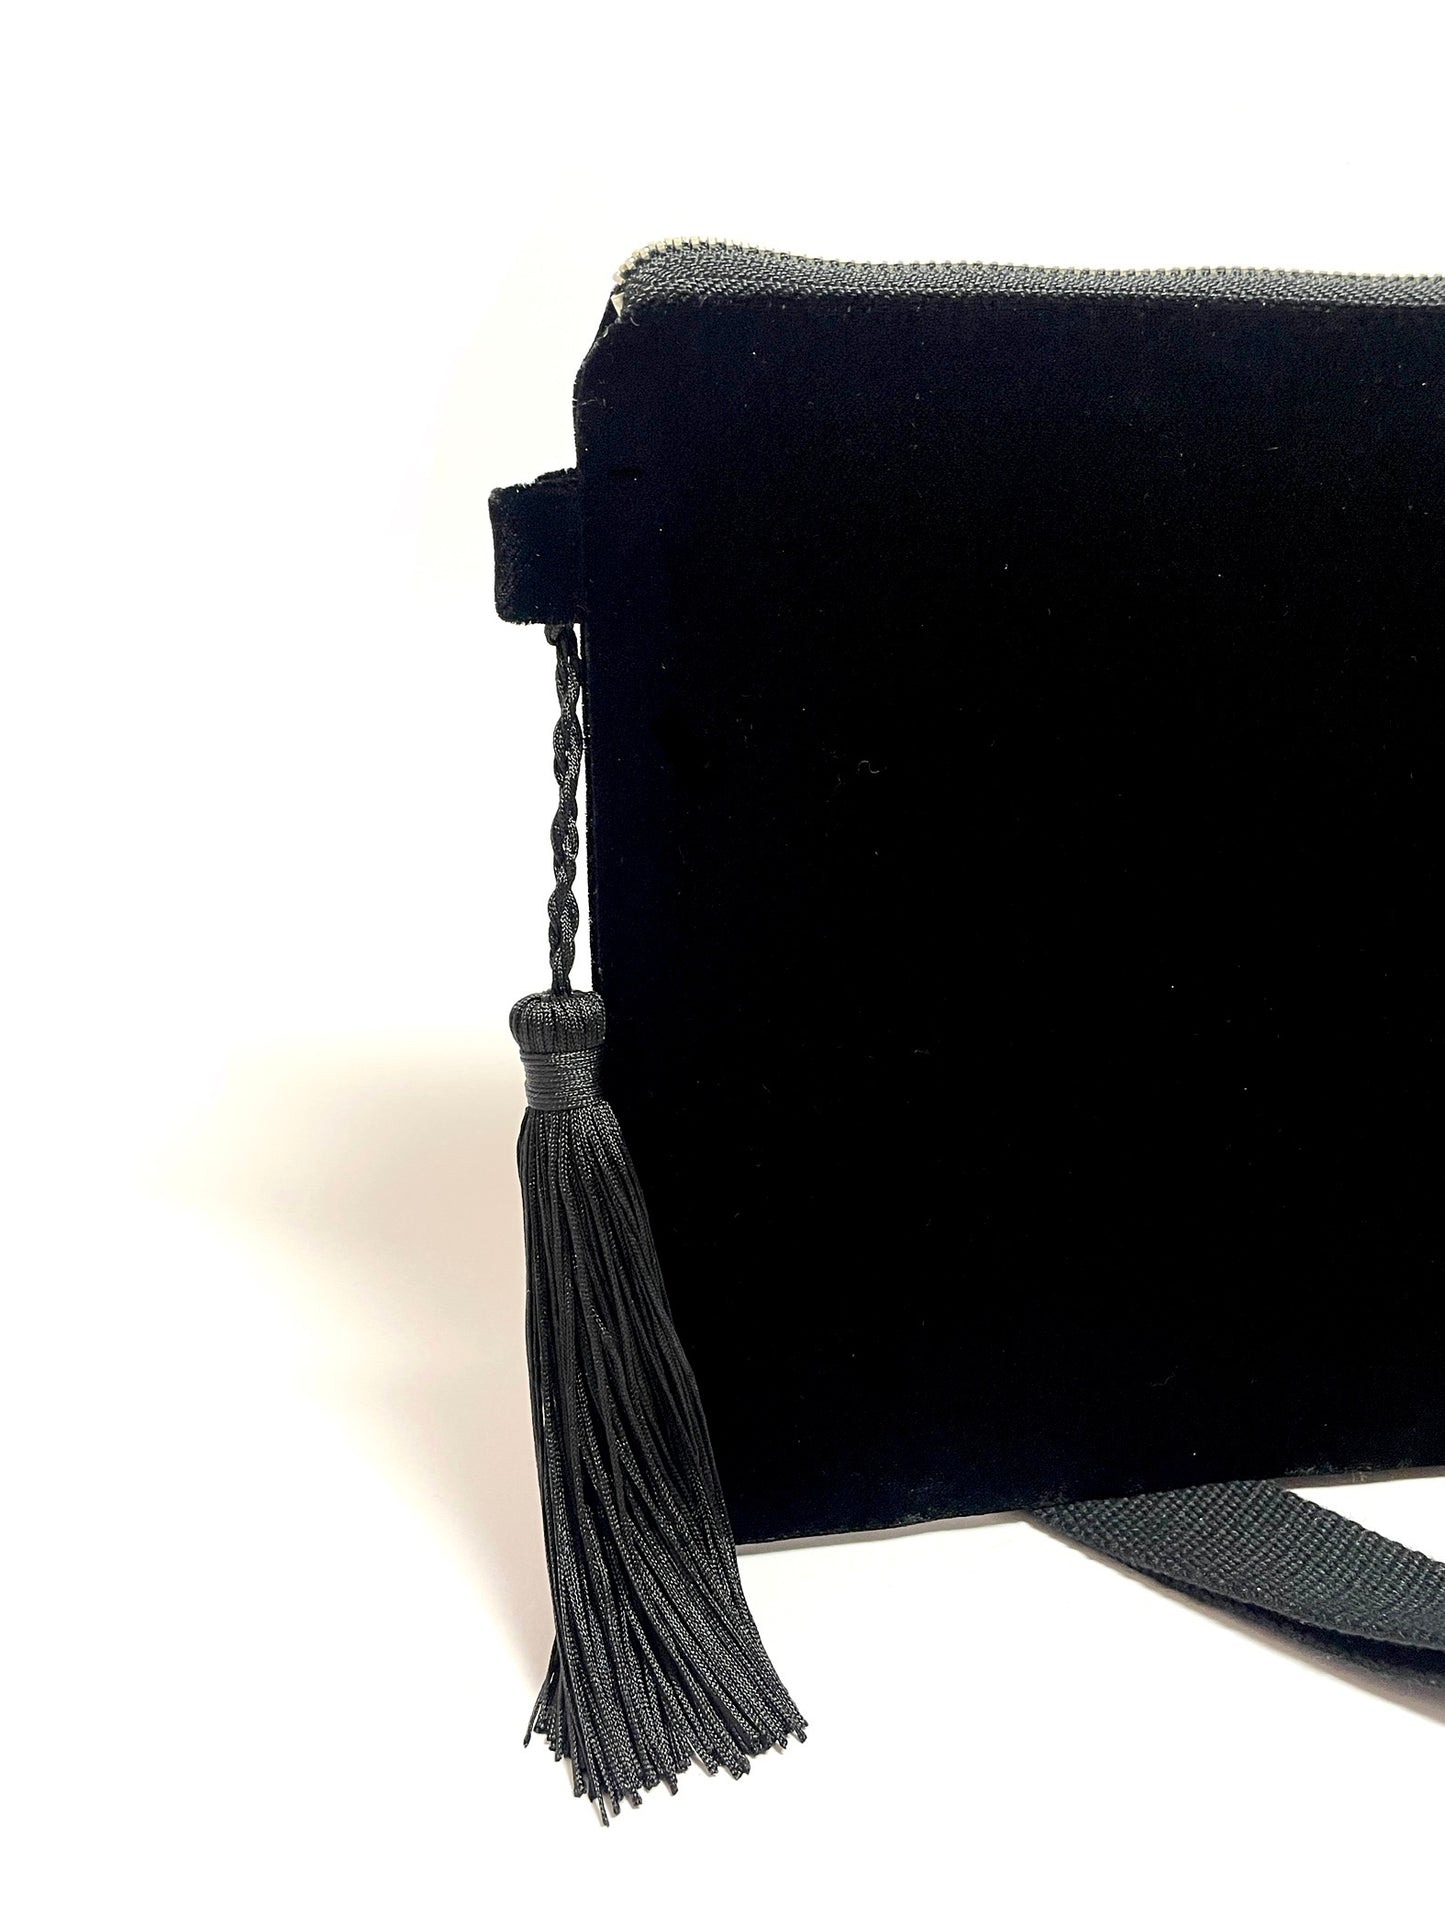 Black velvet crossbody bag